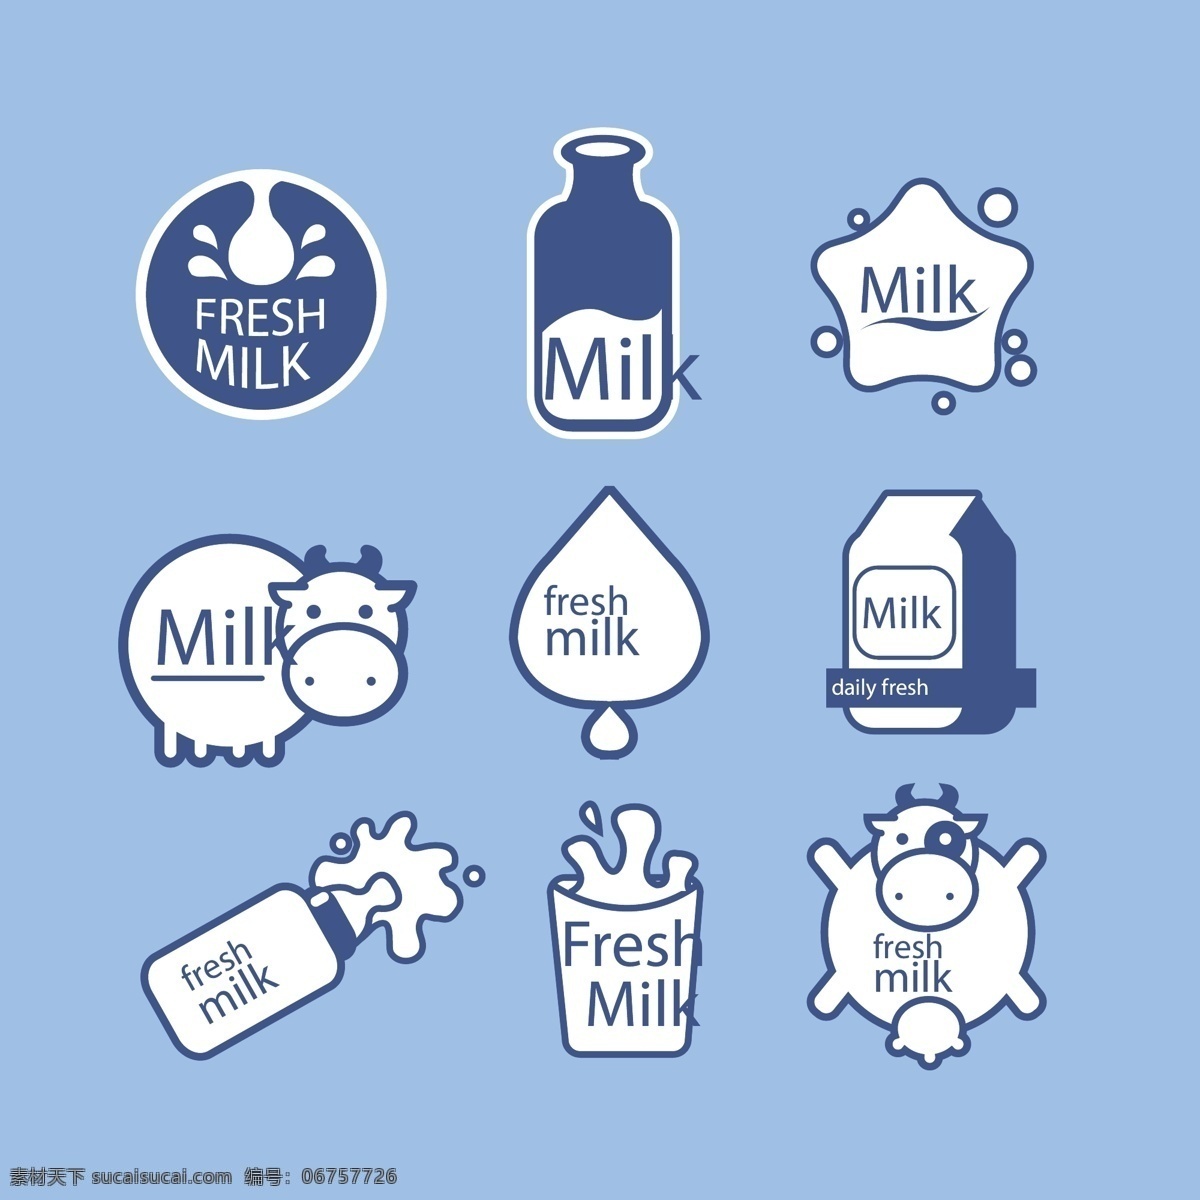 盒装牛奶 白色牛奶 奶牛 蓝色盒子牛奶 milk 杯子 豆奶 喷溅的牛奶 早餐 营养 食物 创意 广告 背景素材 海报素材 餐饮美食 传统美食 奶茶 水果汁系列 牛奶飞溅素材 包装设计